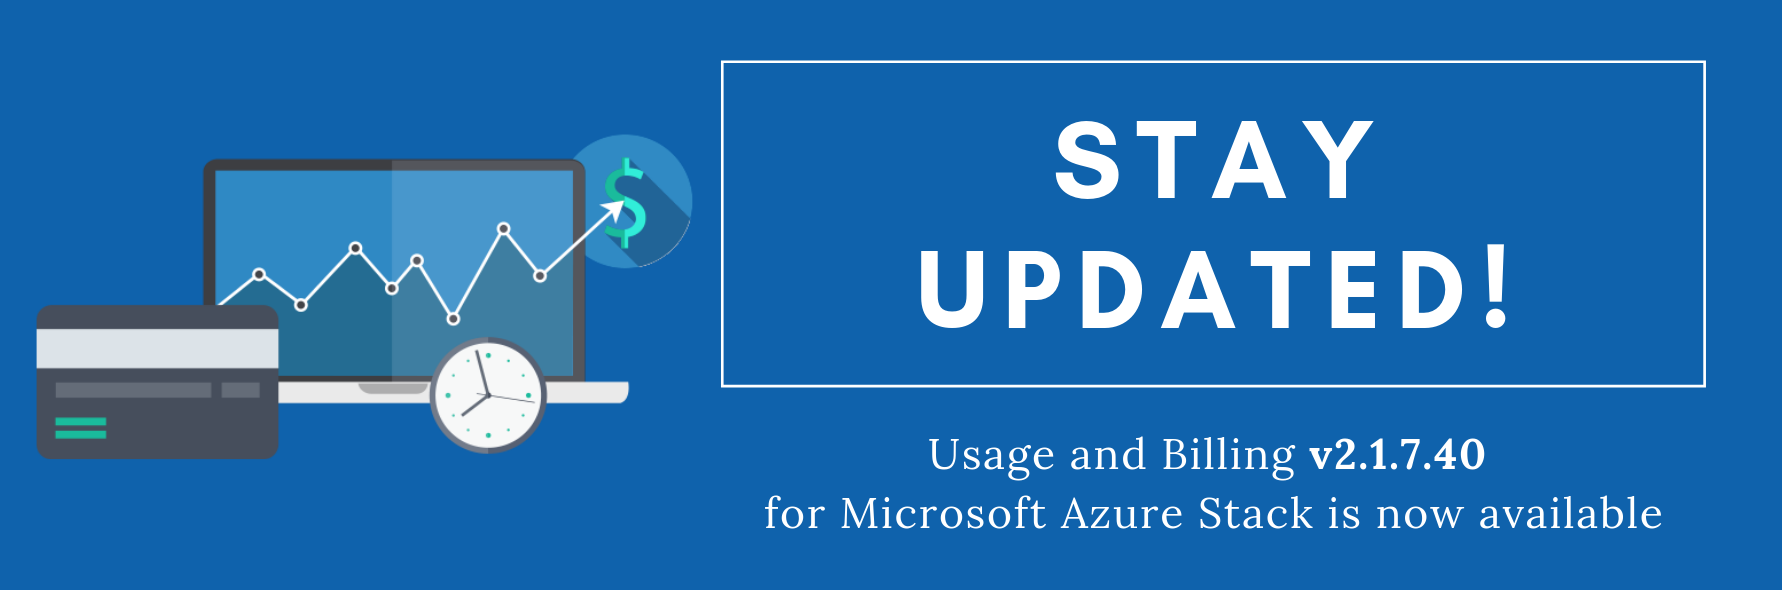 Usage and Billing v2.1.7.40 for Microsoft Azure Stack